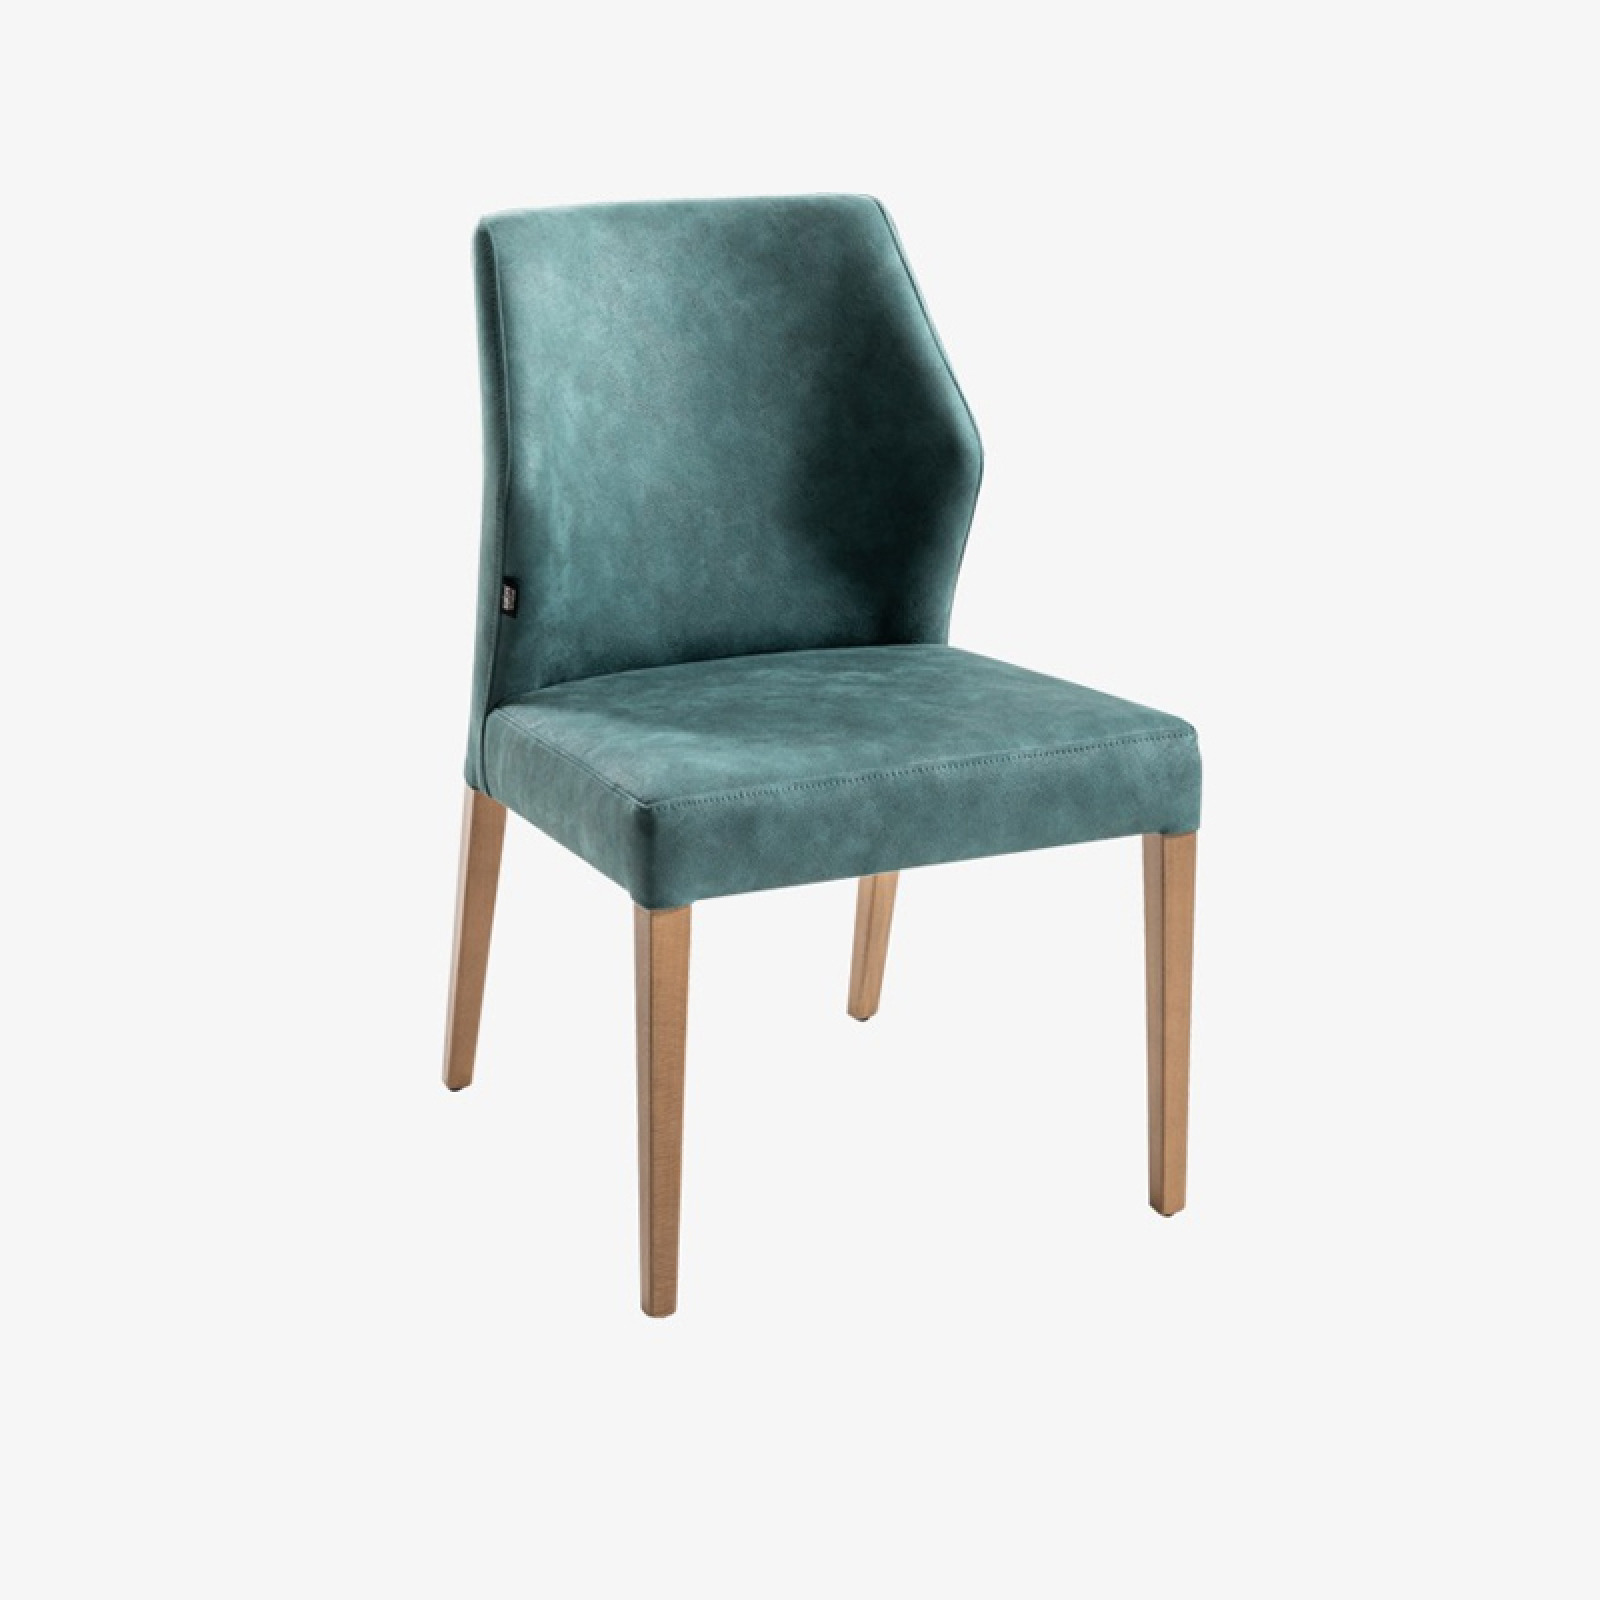 London green chair